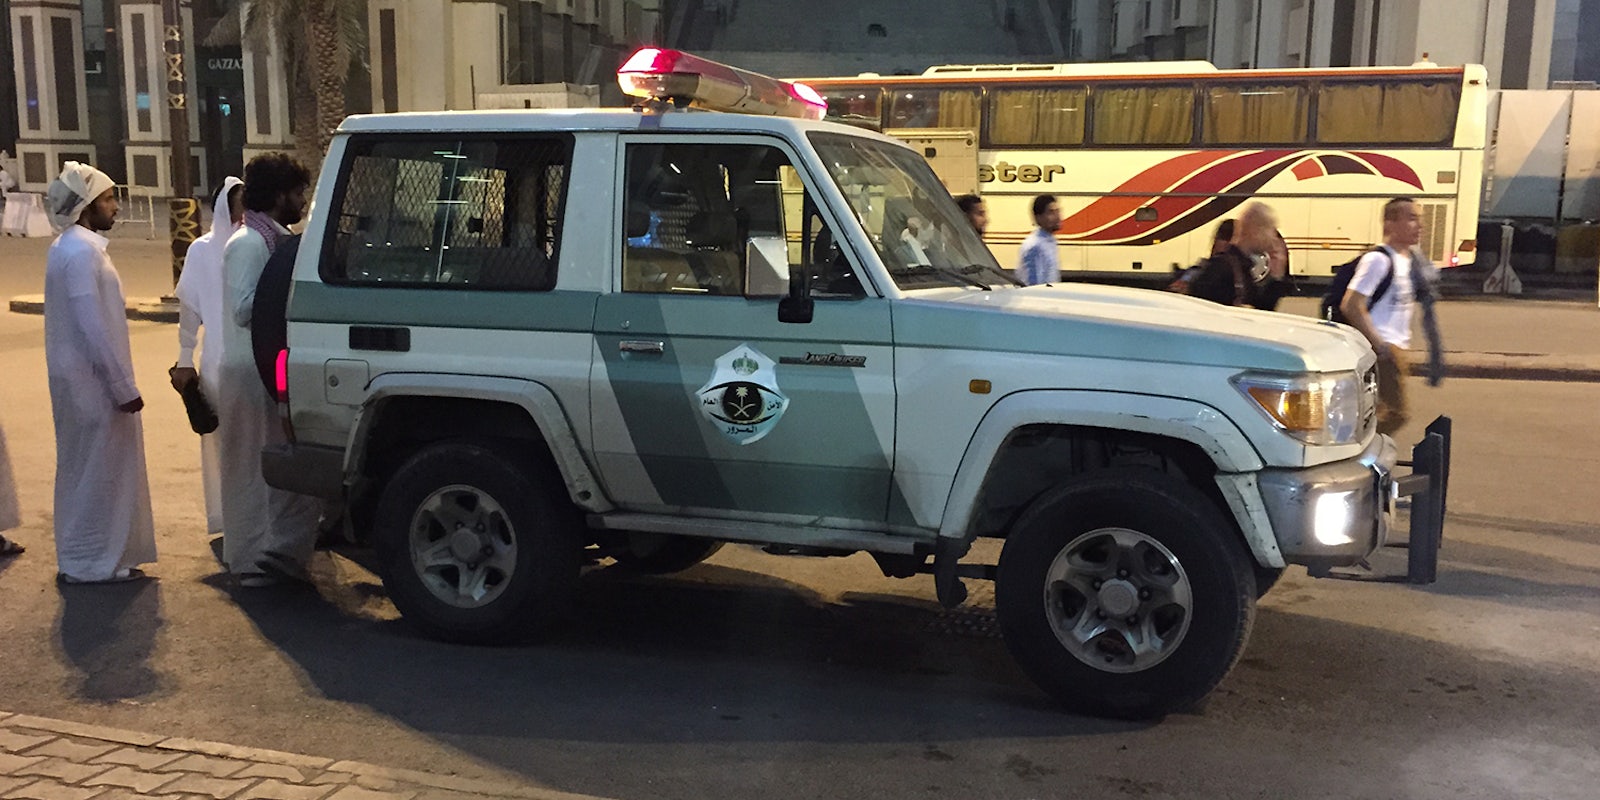 Saudi Arabian police vehicle